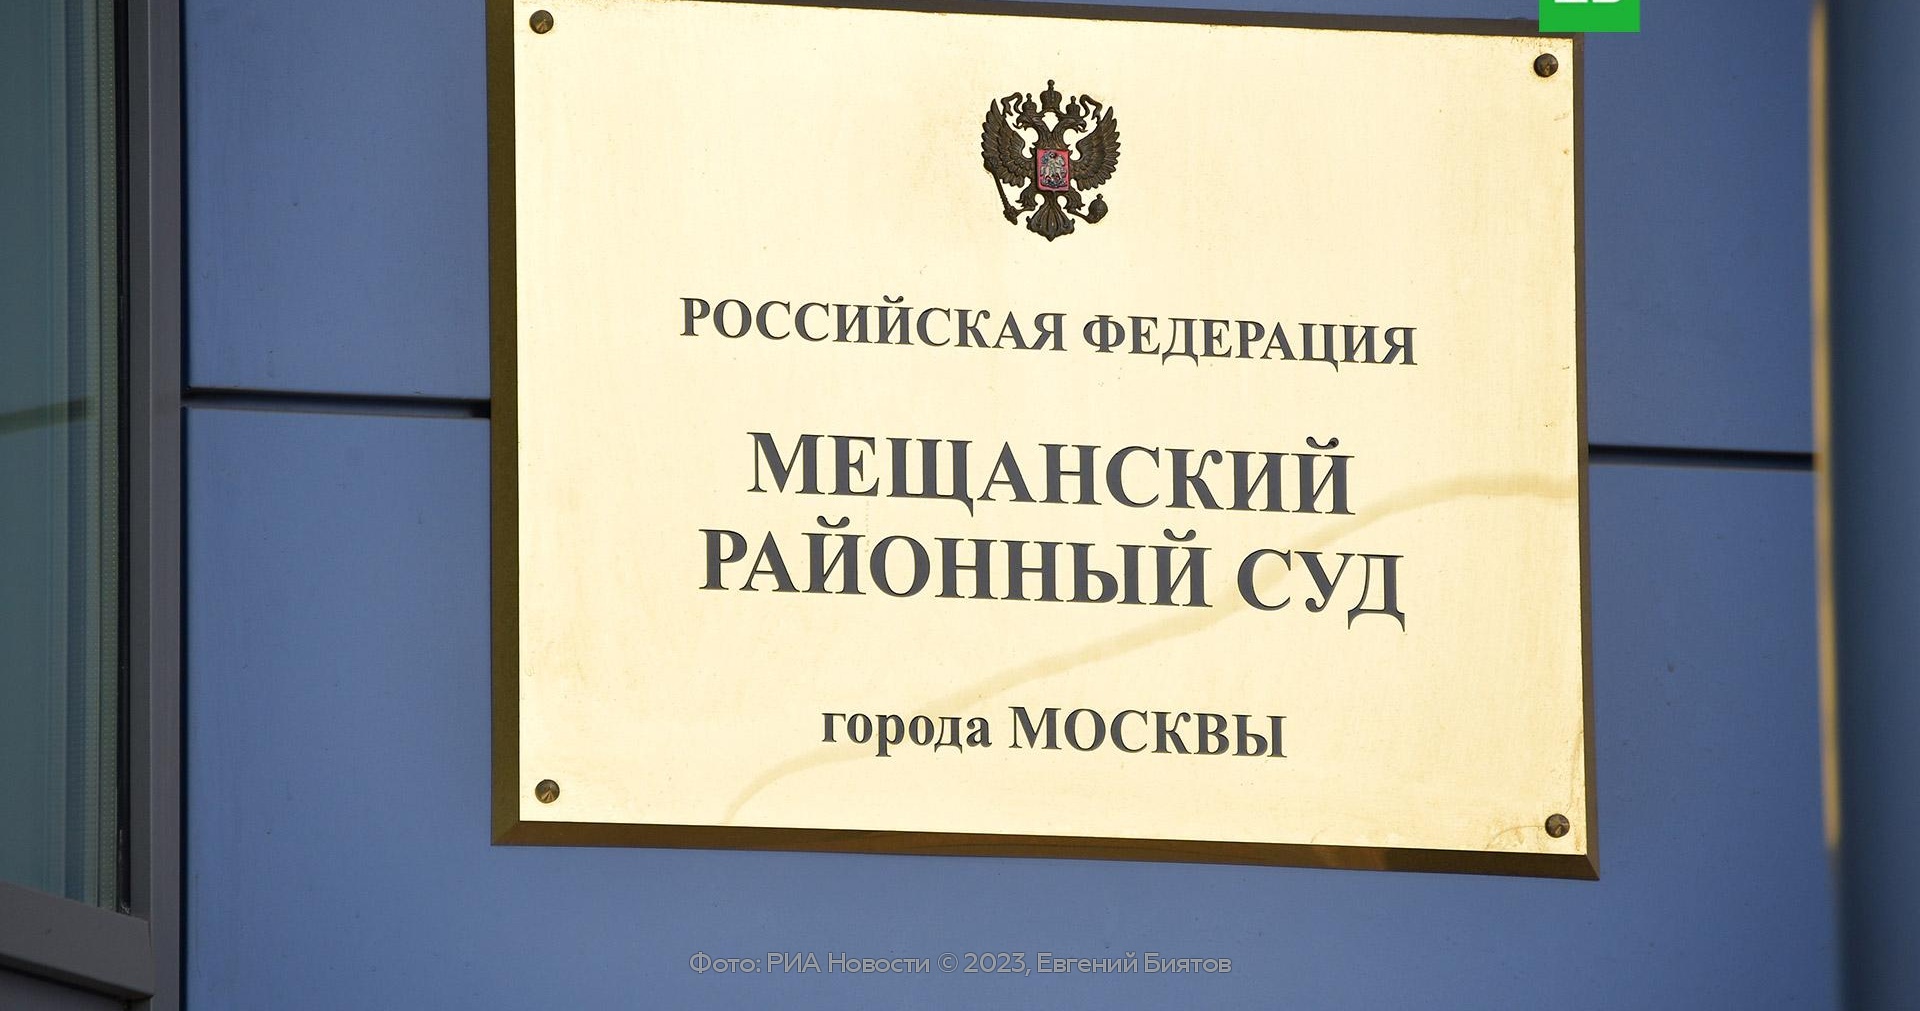 мещанский районный суд города москвы